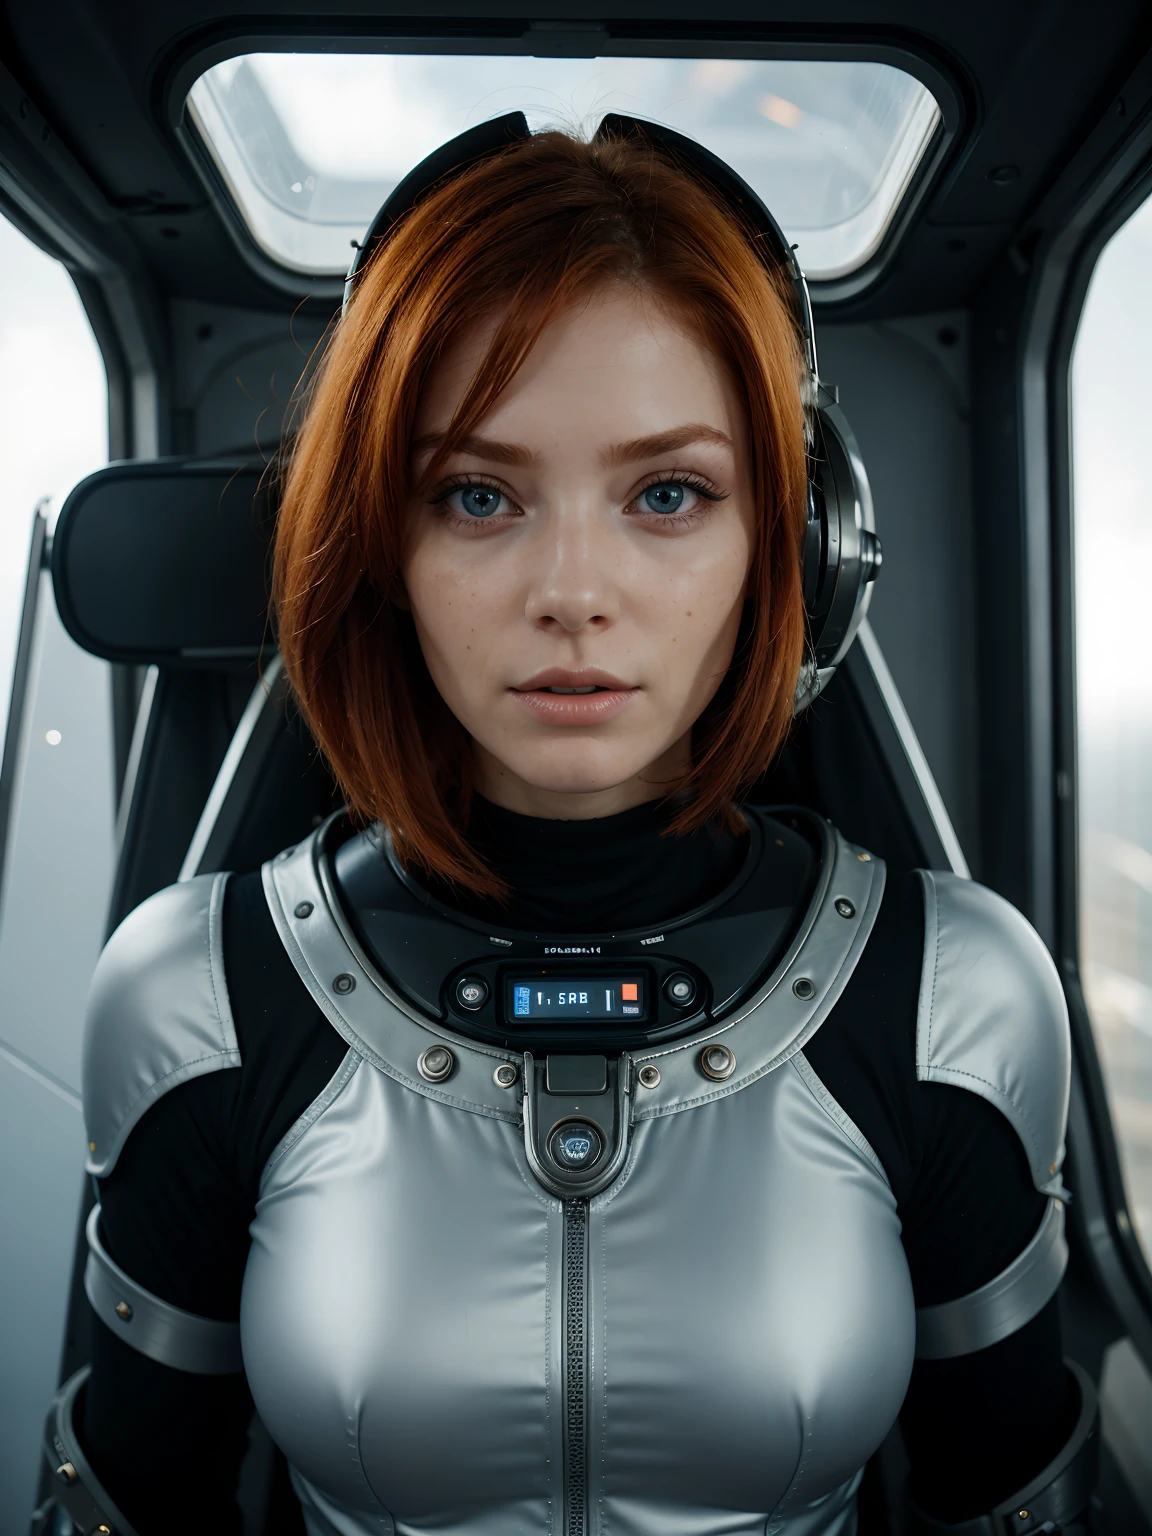 一位红发女人的照片, 在太空, 未来太空服, (雀斑:0.8) 可爱的脸孔, 科幻, 反乌托邦, 细致的眼睛, 蓝眼睛